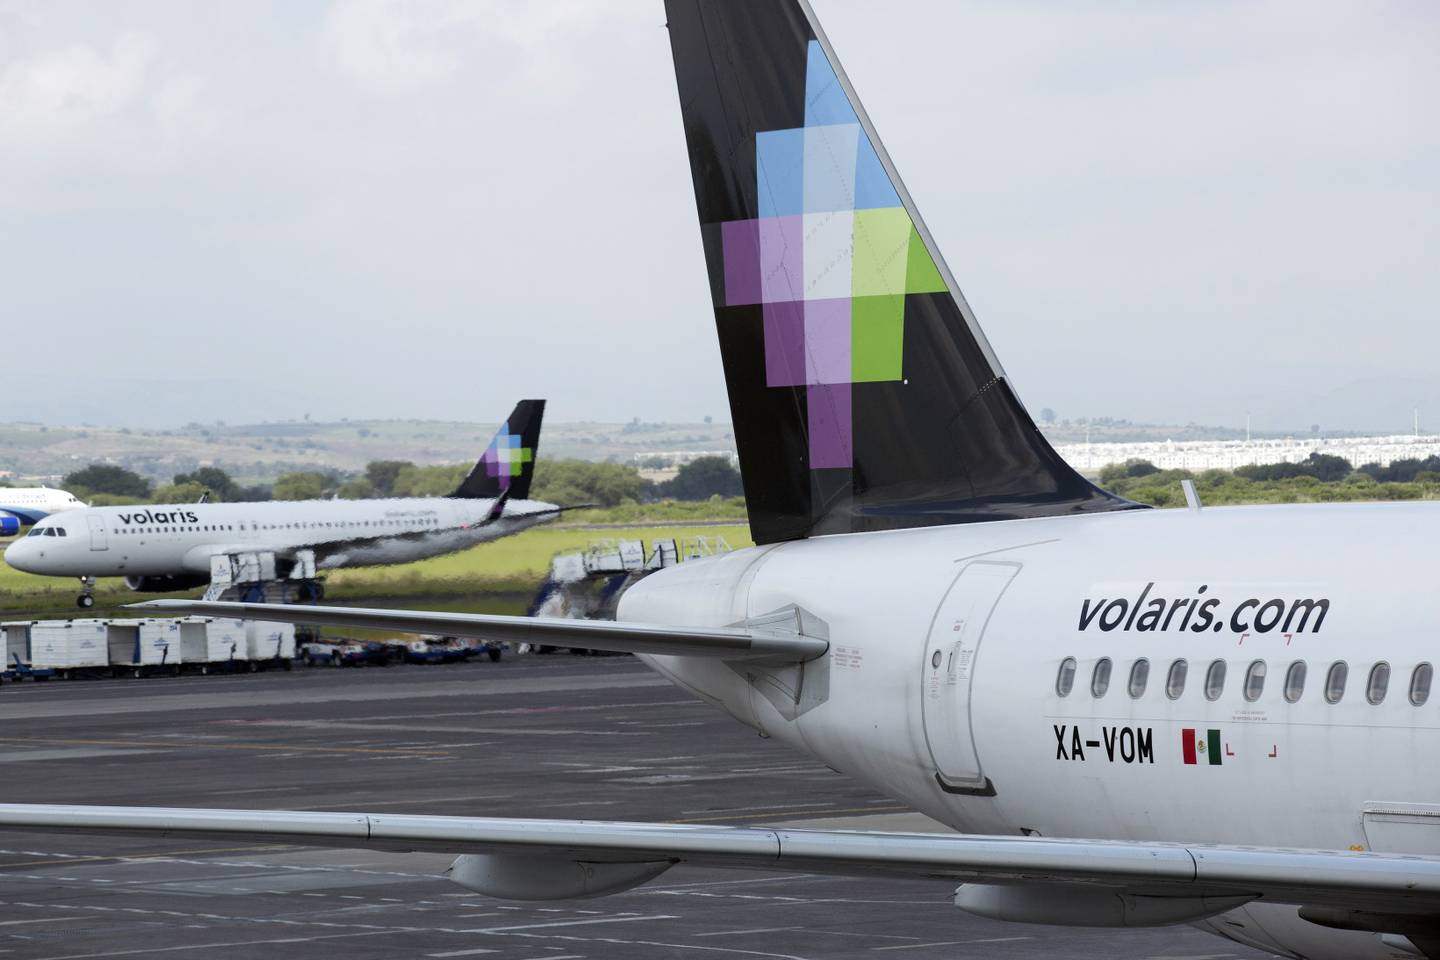 Volaris inició operaciones en marzo de esta año en el nuevo aeropuerto impulsado por el presidente de México, Andrés Manuel López Obrador, con dos rutas que van a Tijuana y Cancún.